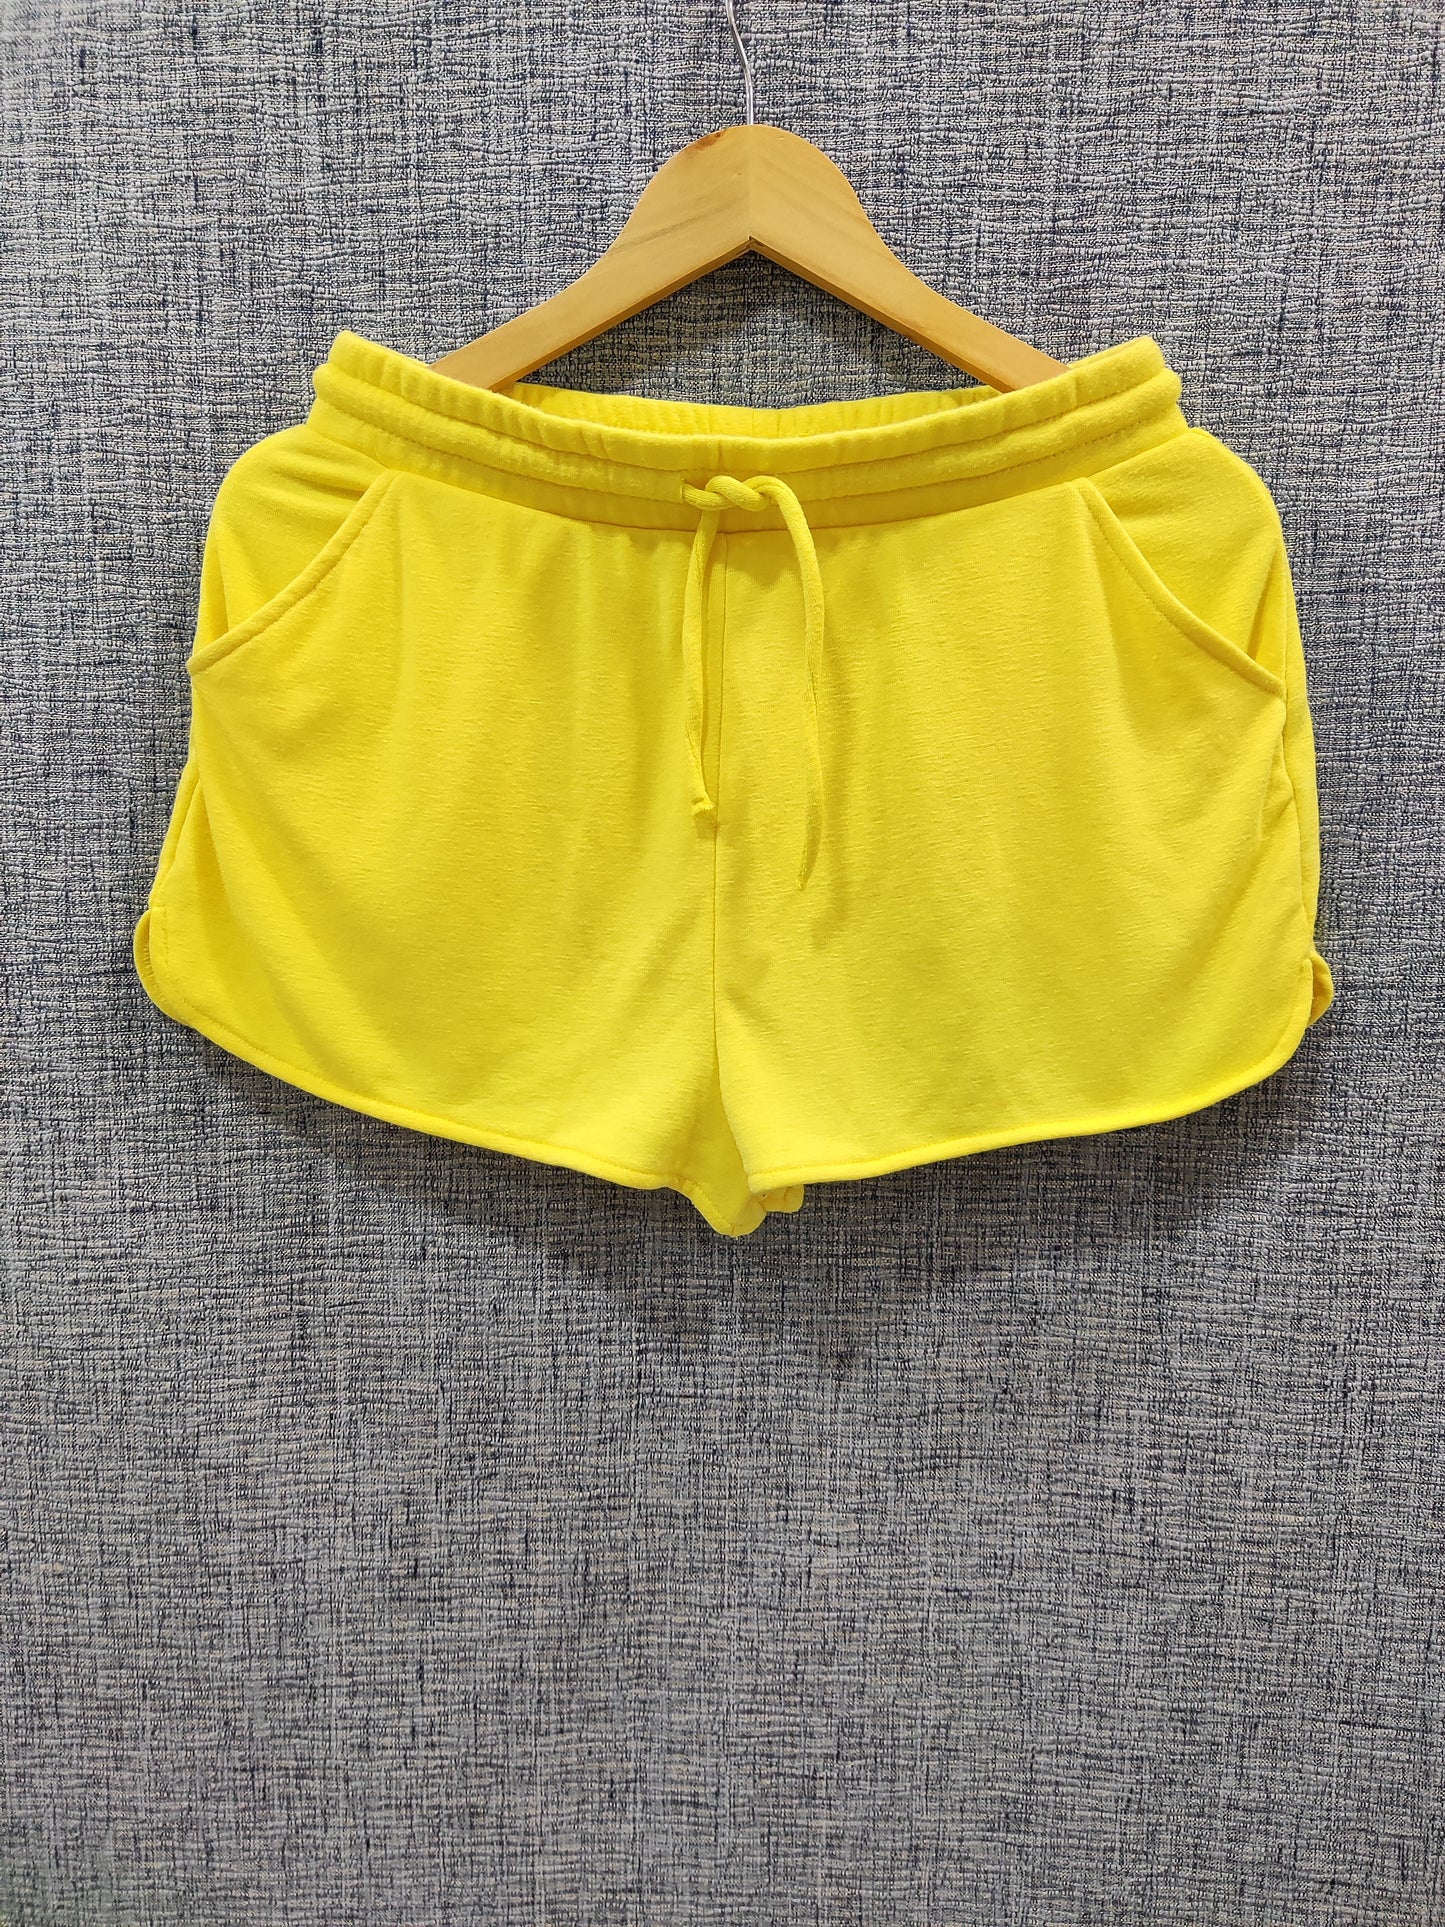 ZARA Yellow Beach Shorts | Relove